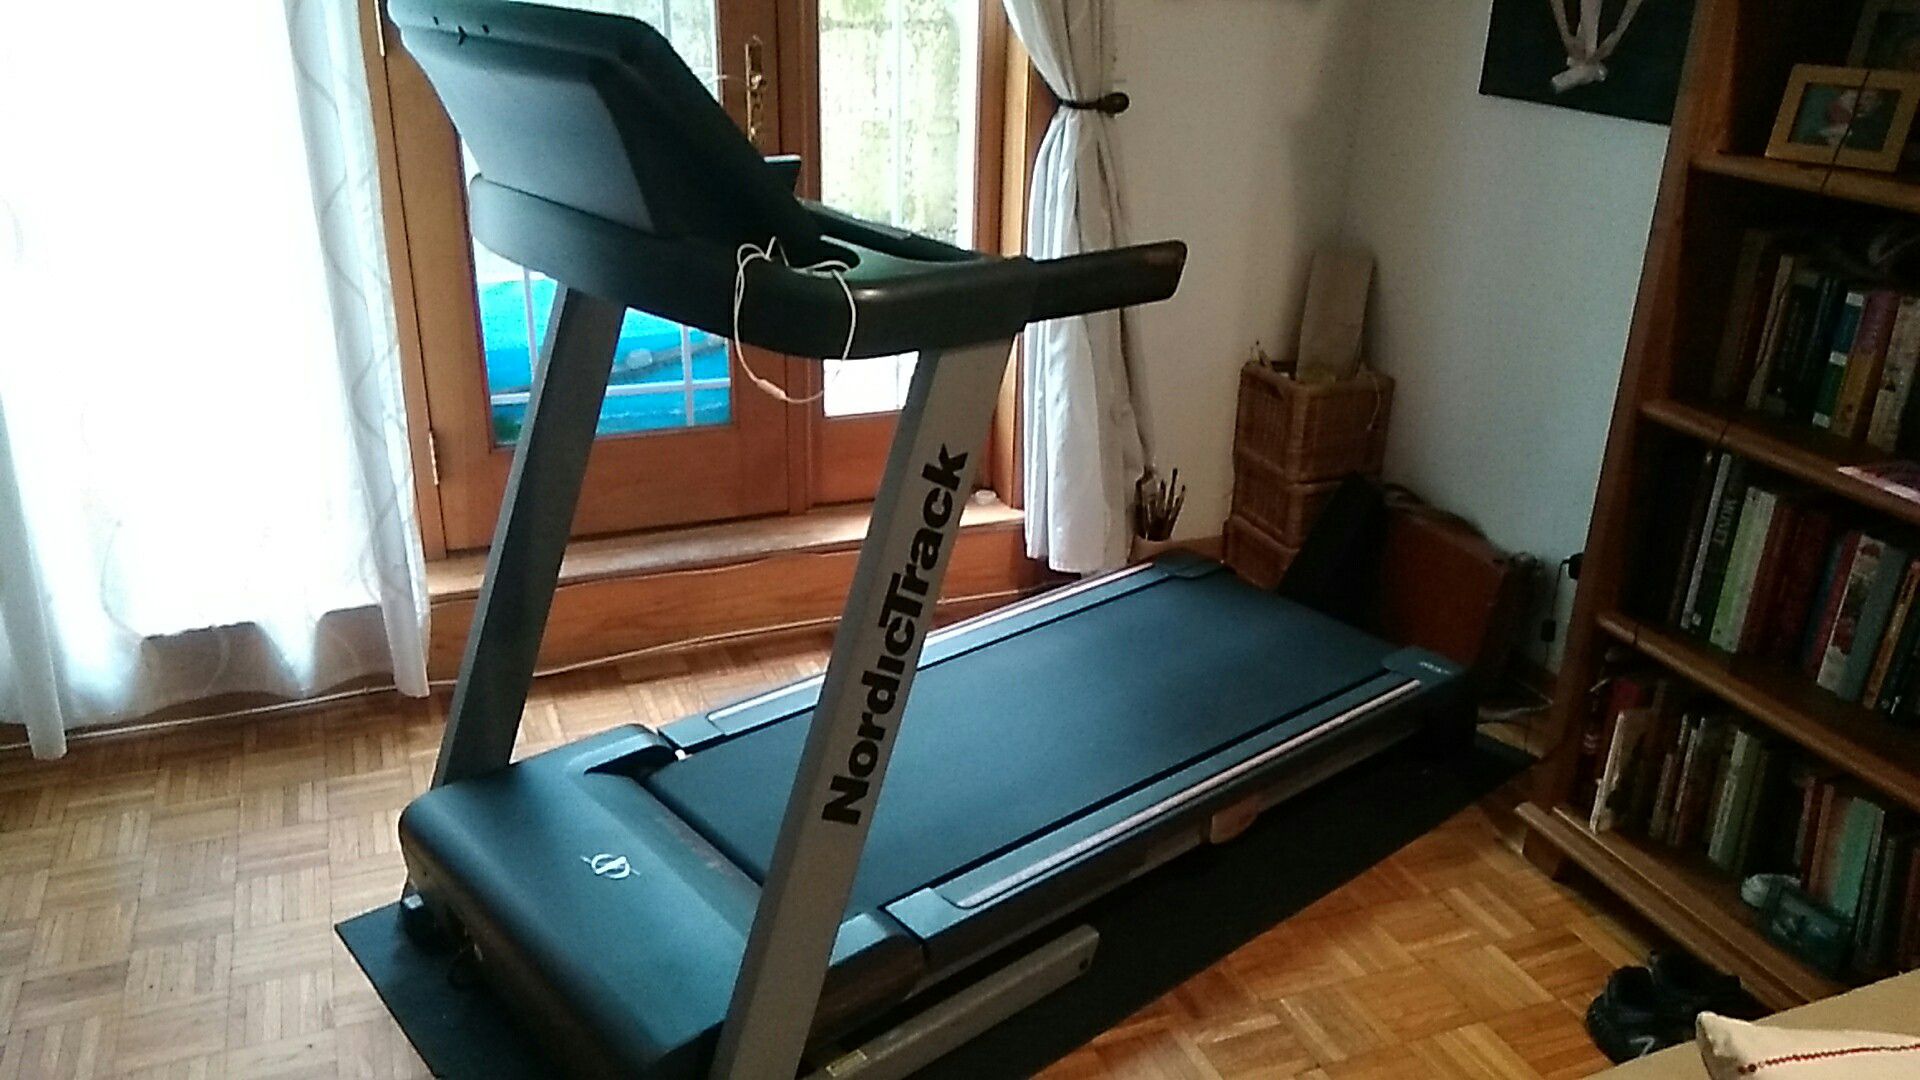 NordicTrack A250 treadmill